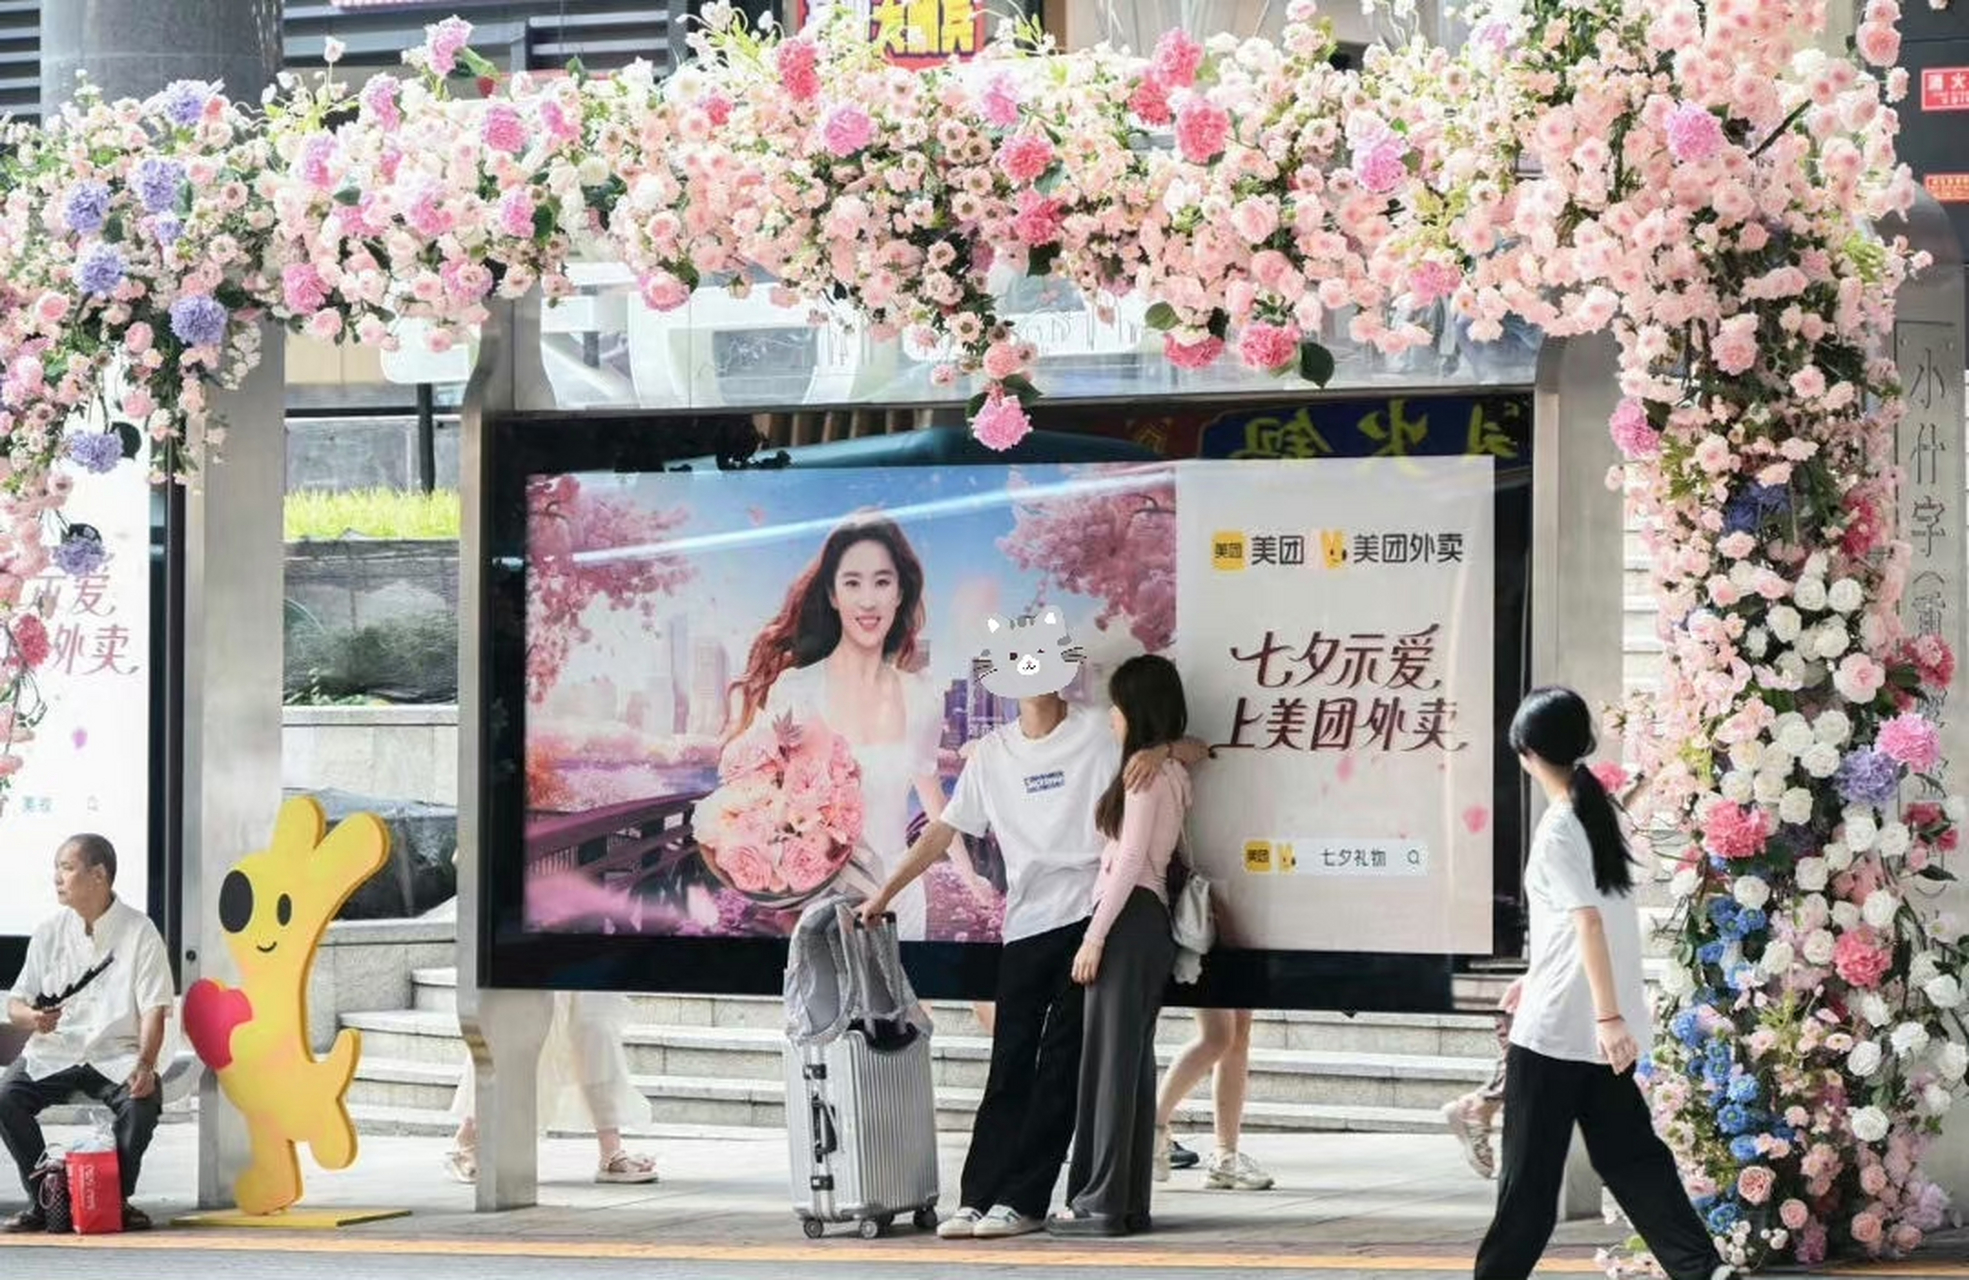 刘亦菲美团外卖粉色浪漫,这户外车站广告真的绝了!